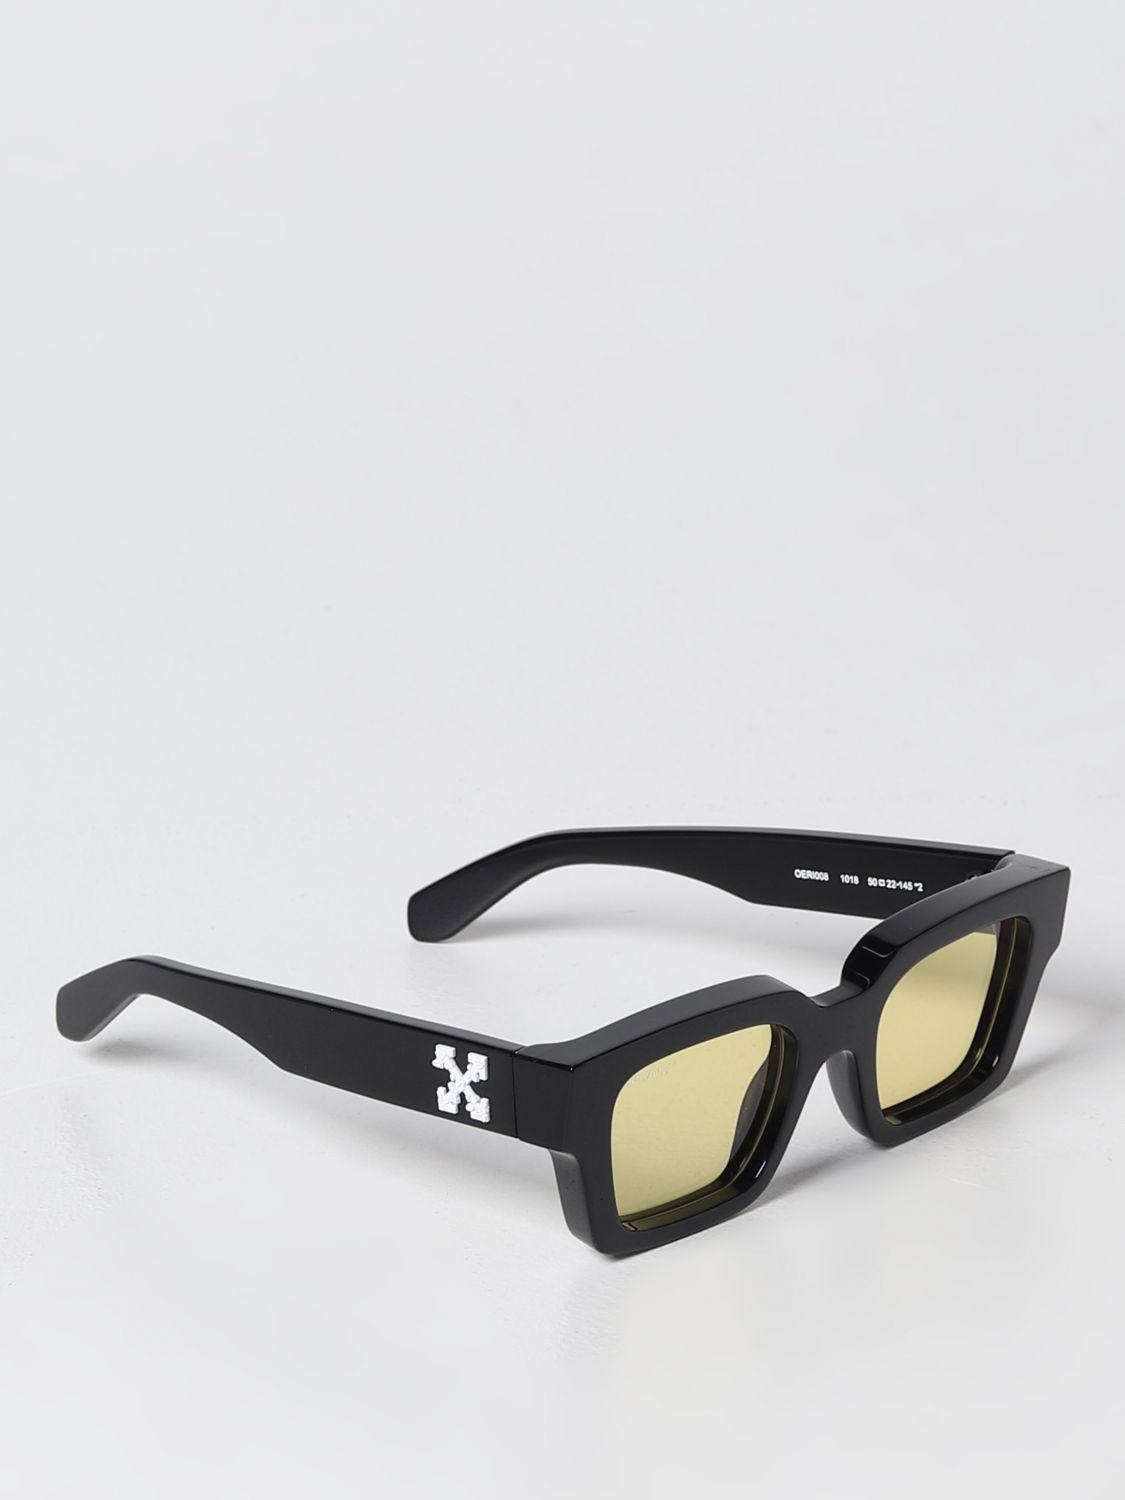 Off-White - Virgil Sunglasses - Black Blue - Luxury - Off-White